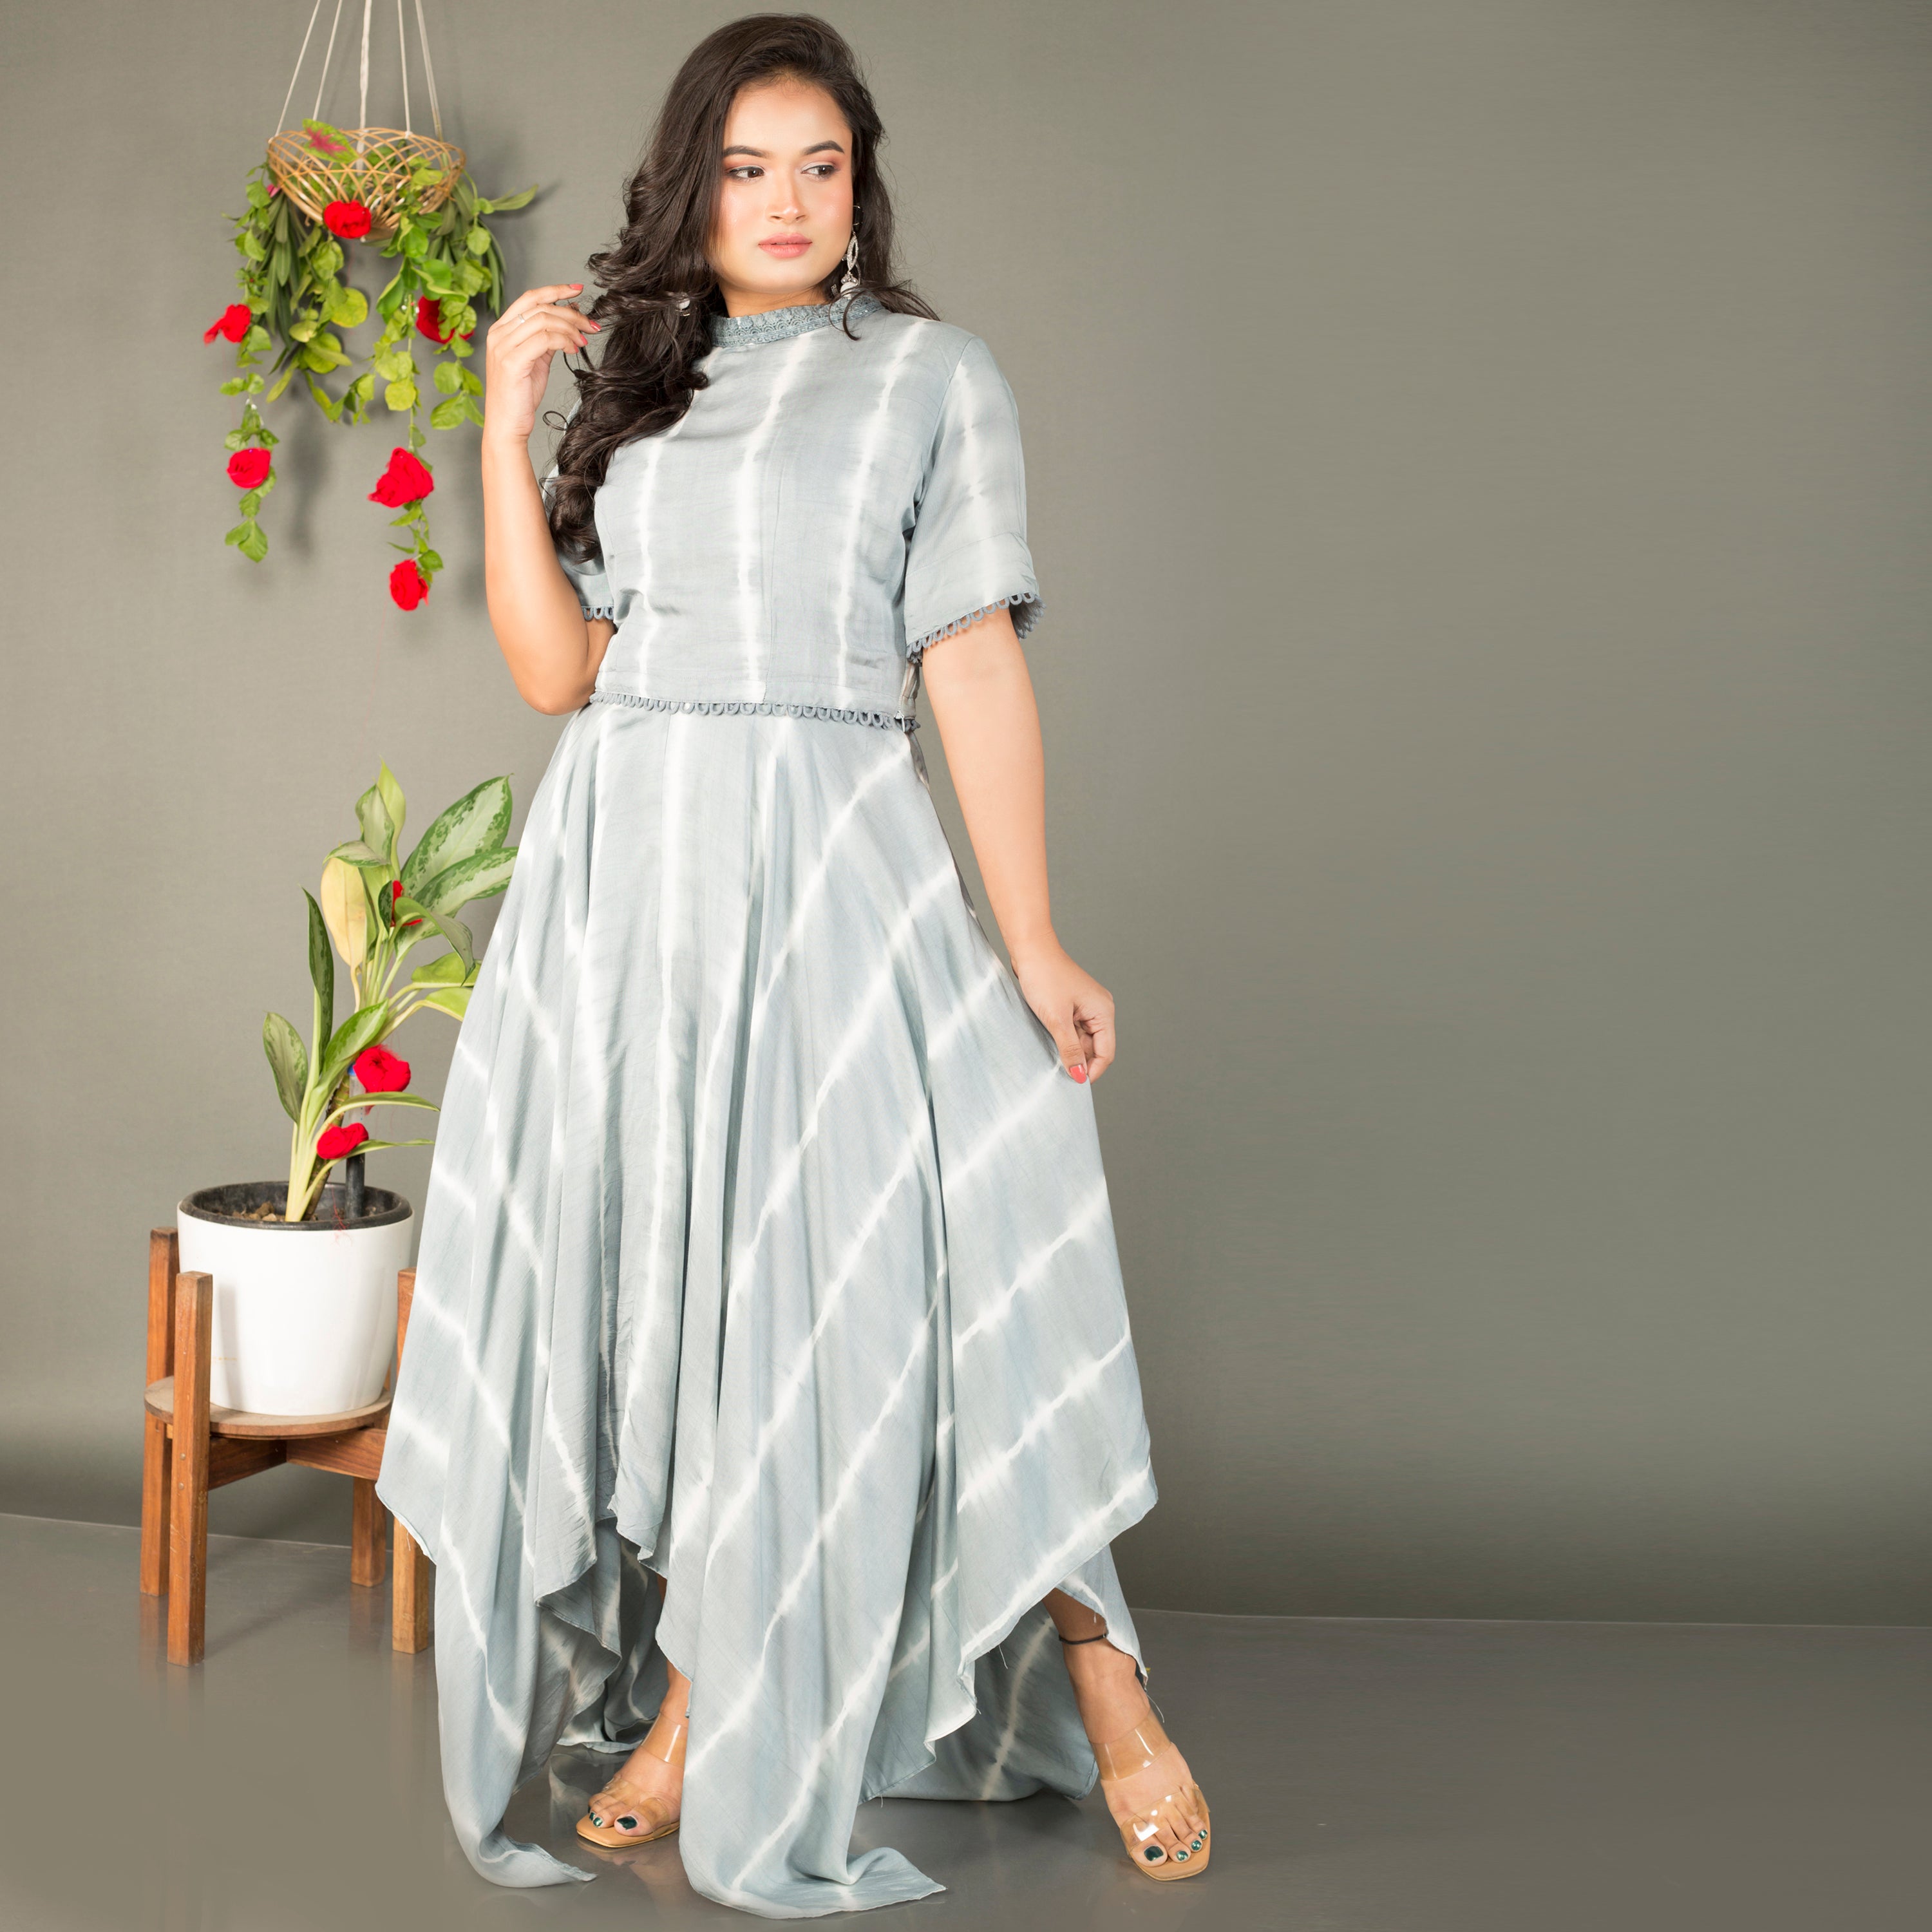 Lehriya gown on pastel shades